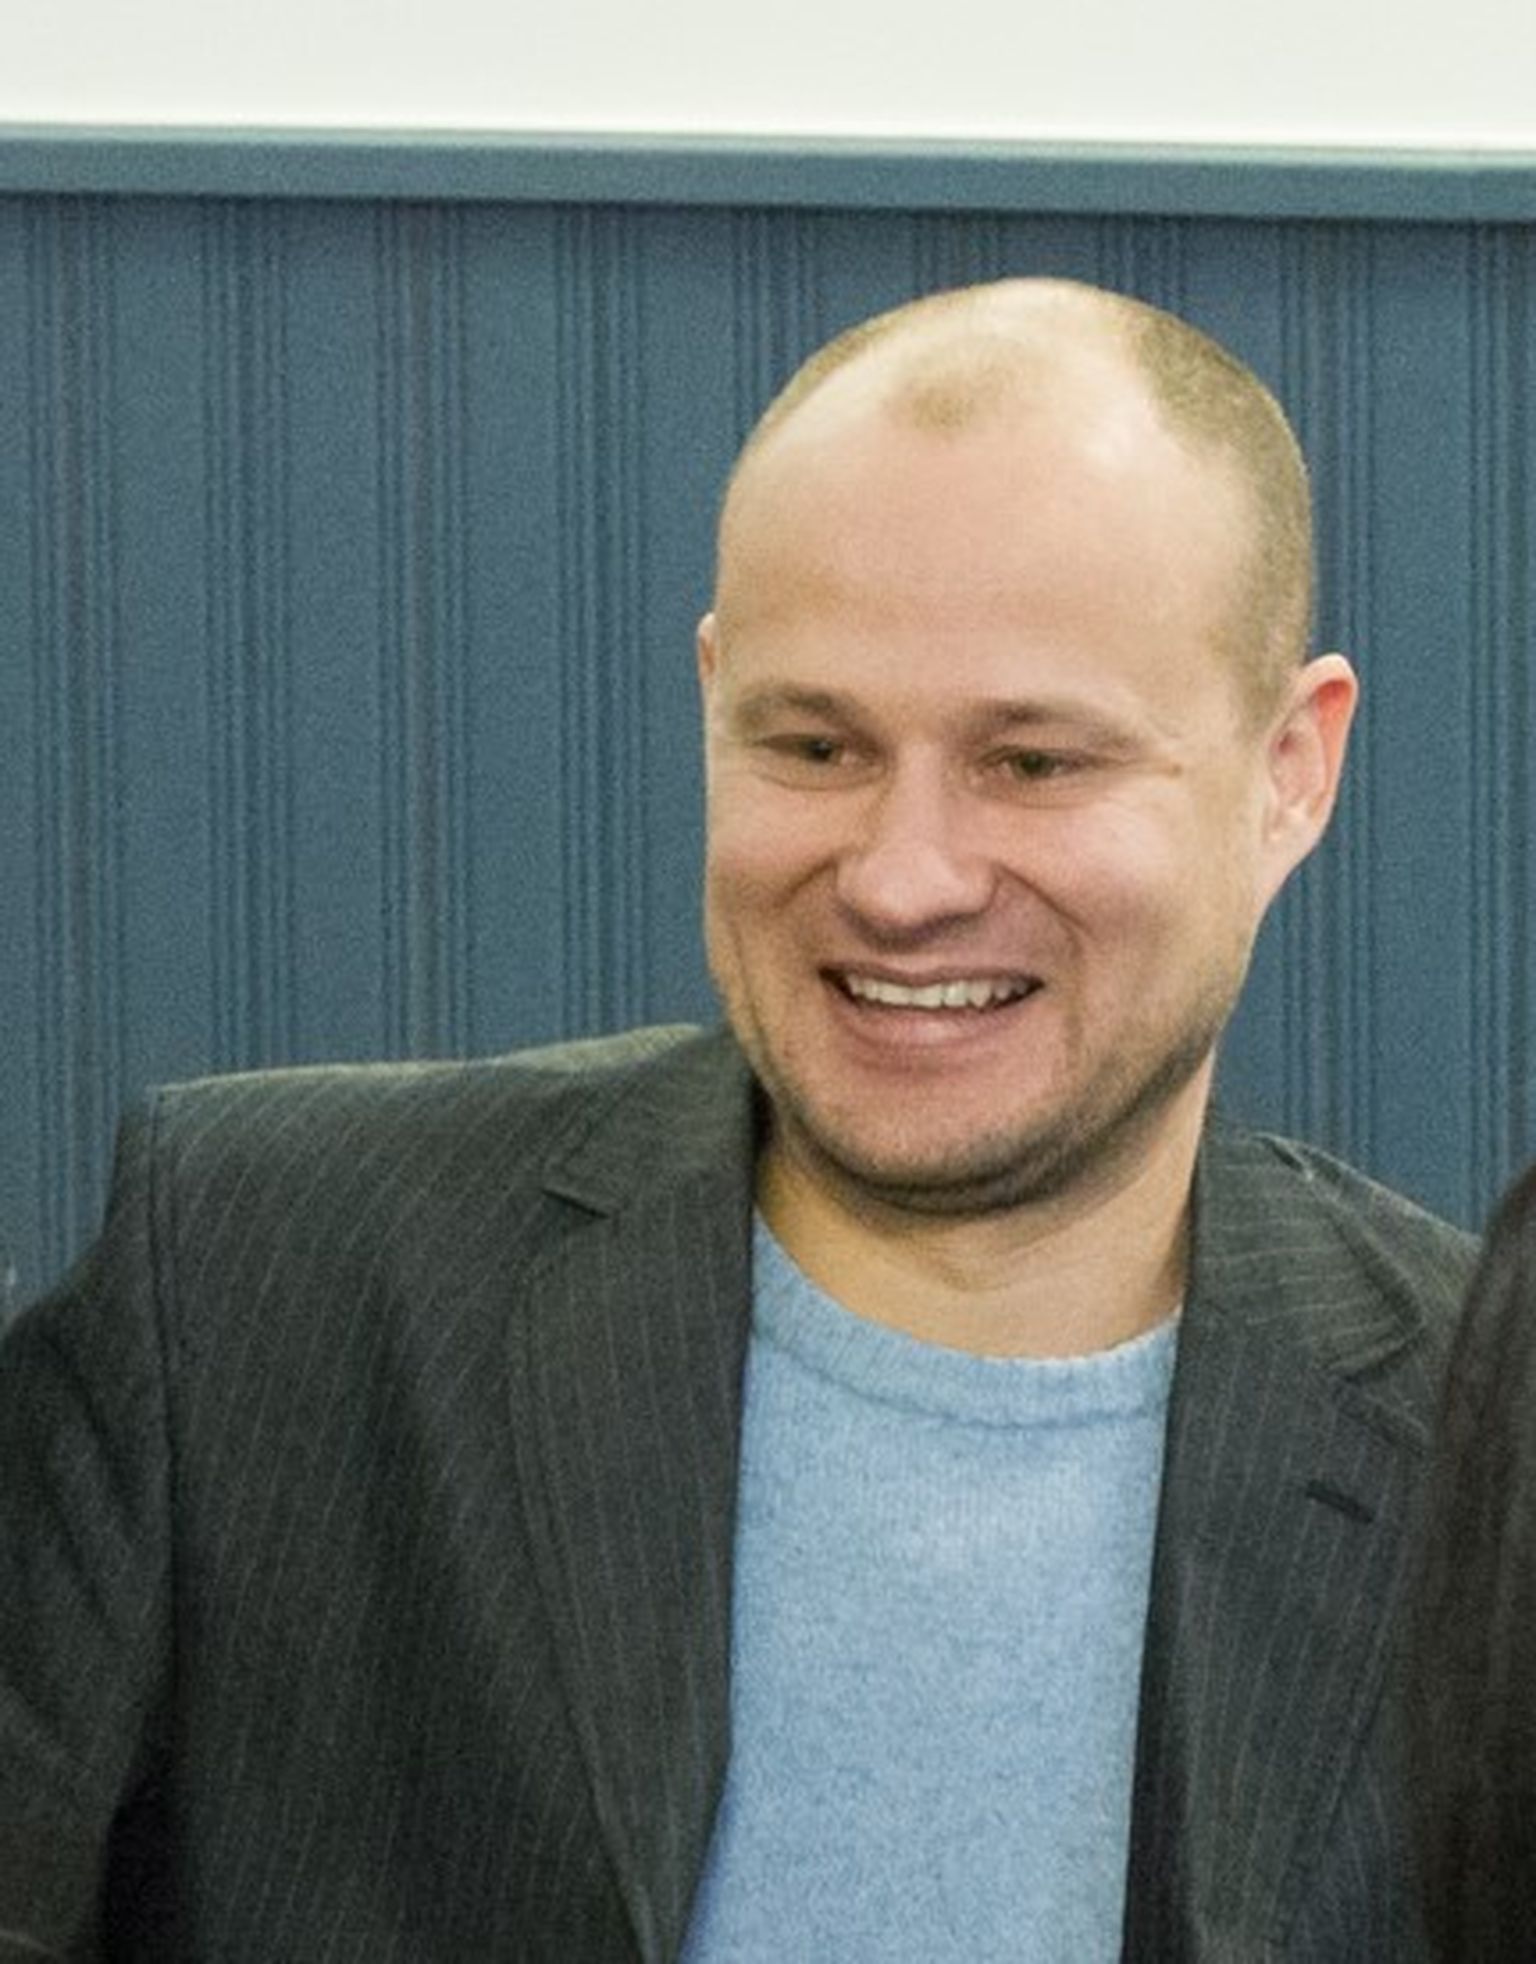 Linnavalitsus nimetas munitsipaalettevõtte OSK Grupp nõukogu liikmeks Jevgeni Saltõkovi, kes kannab praegu karistust kelmuse ja võltsimise eest.